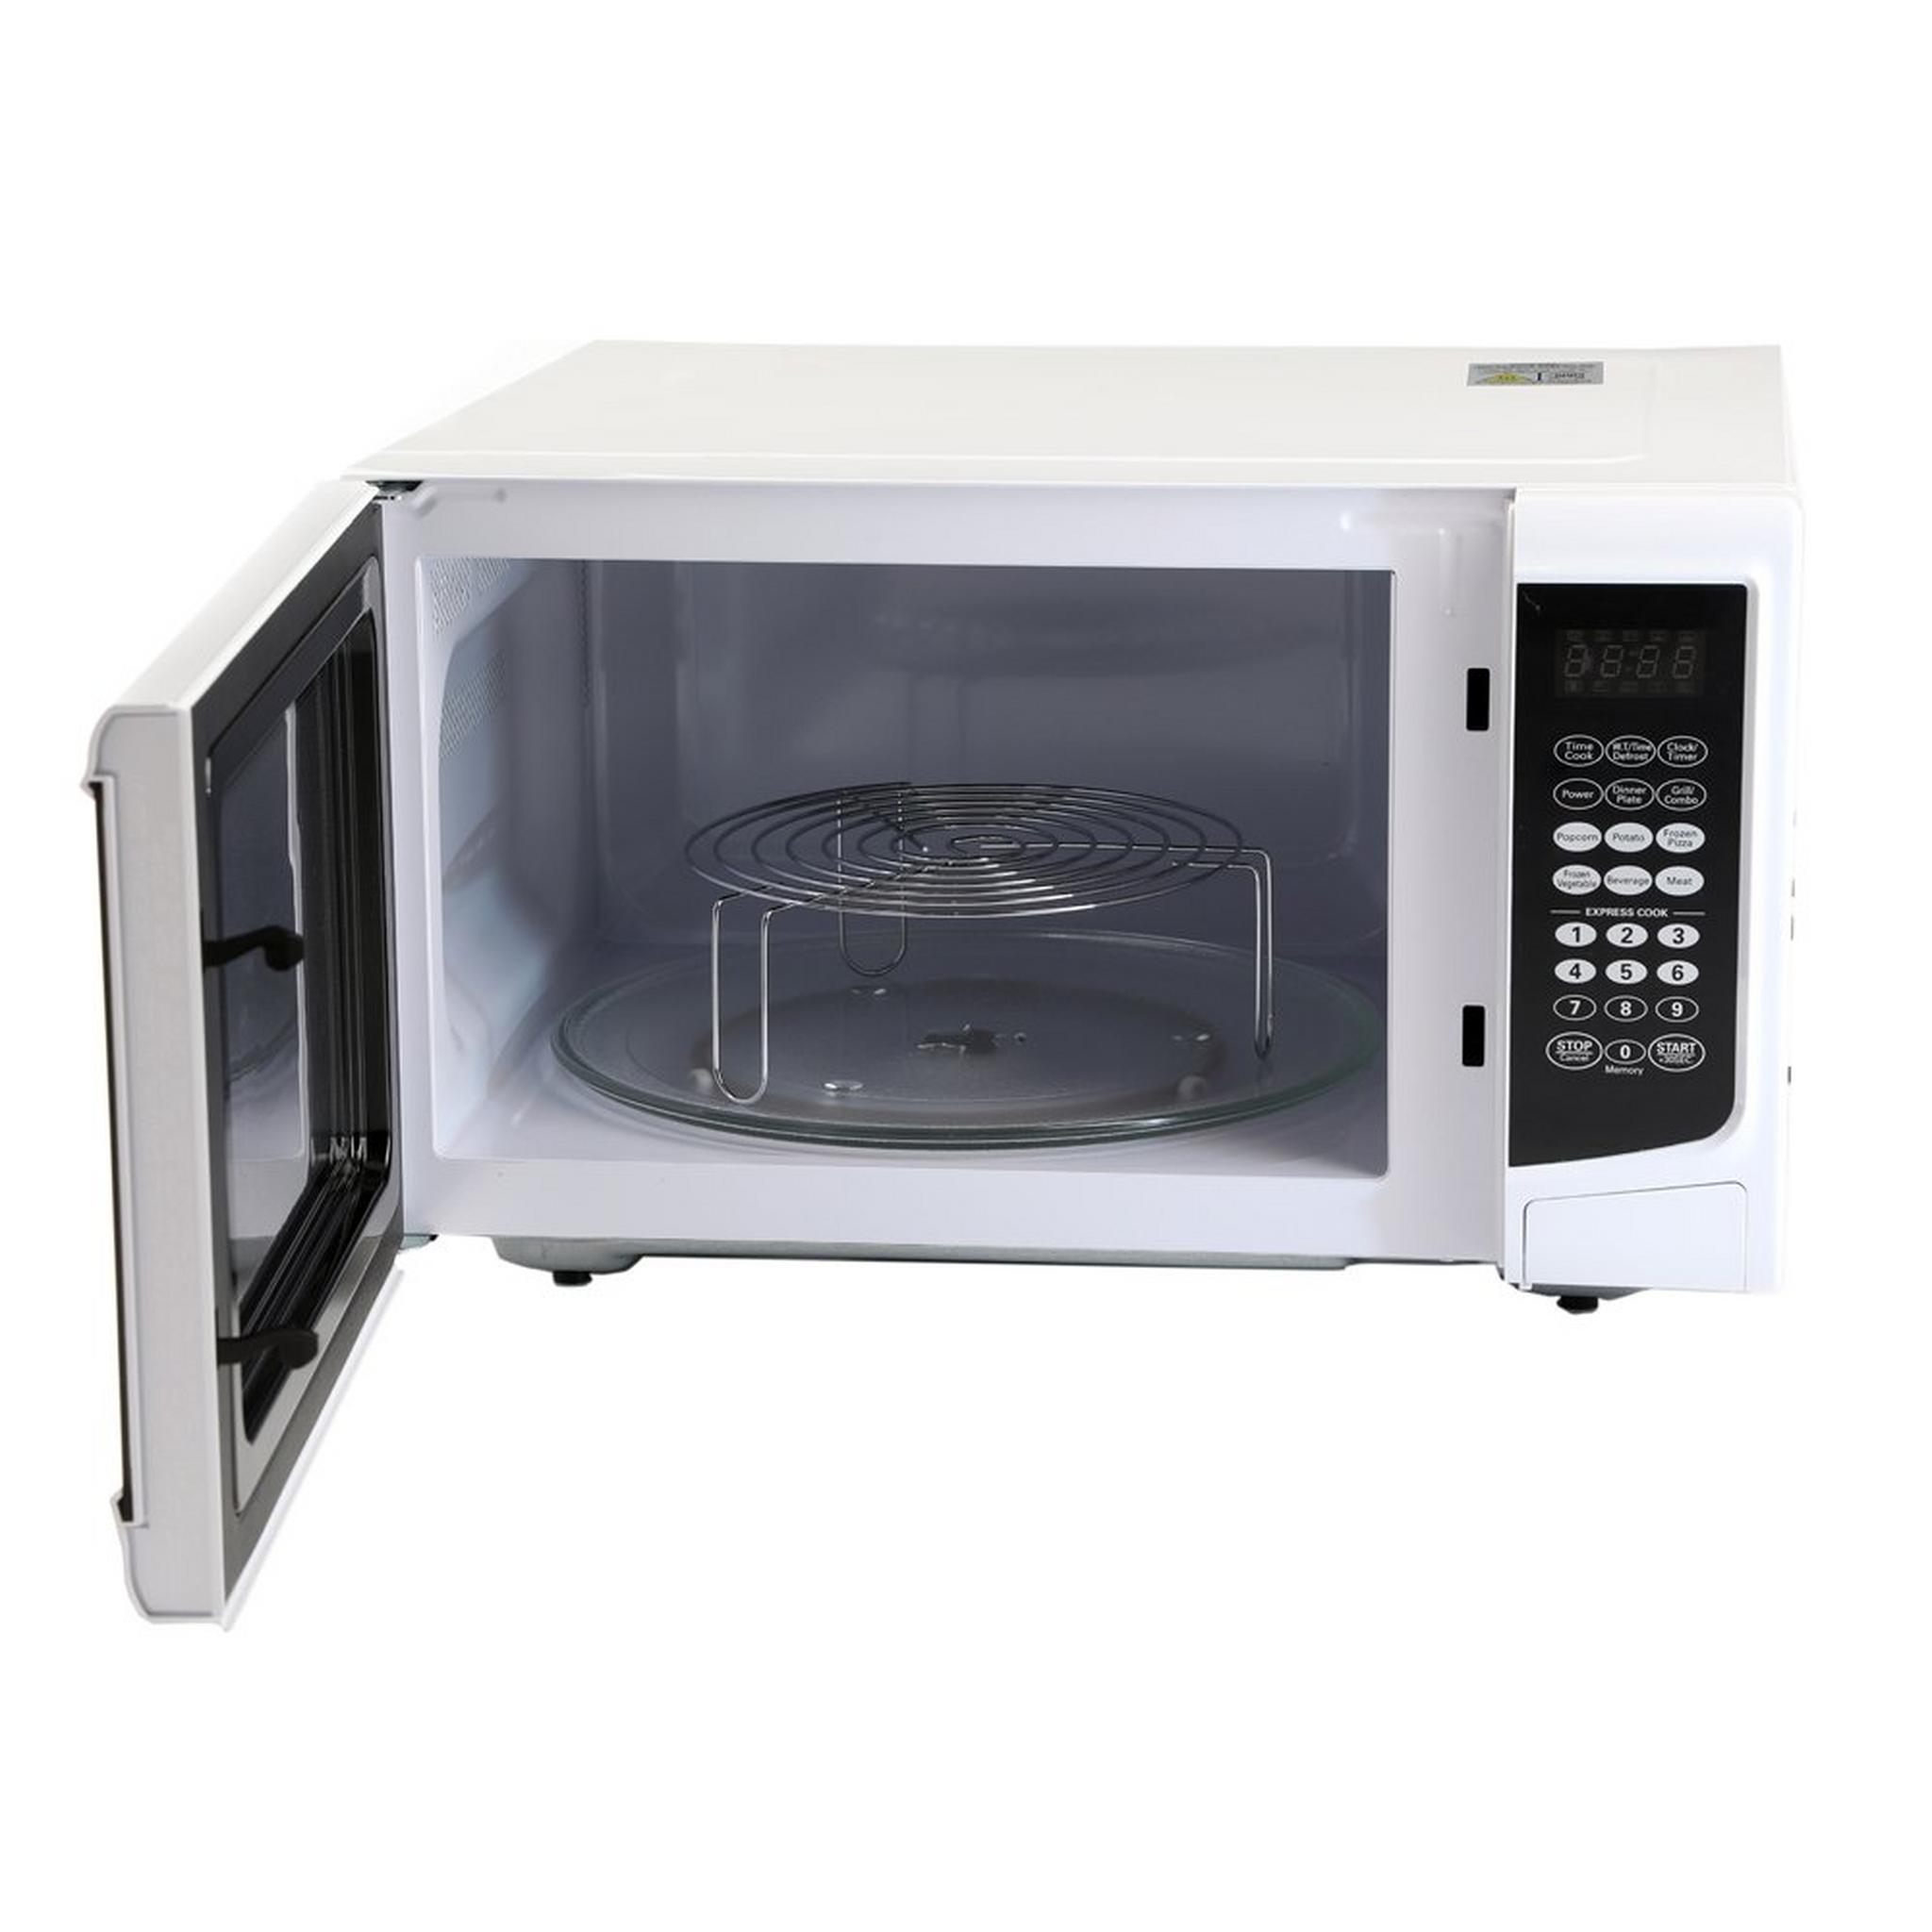 Wansa Microwave Grill 1100W 42L  (EG142A) - White